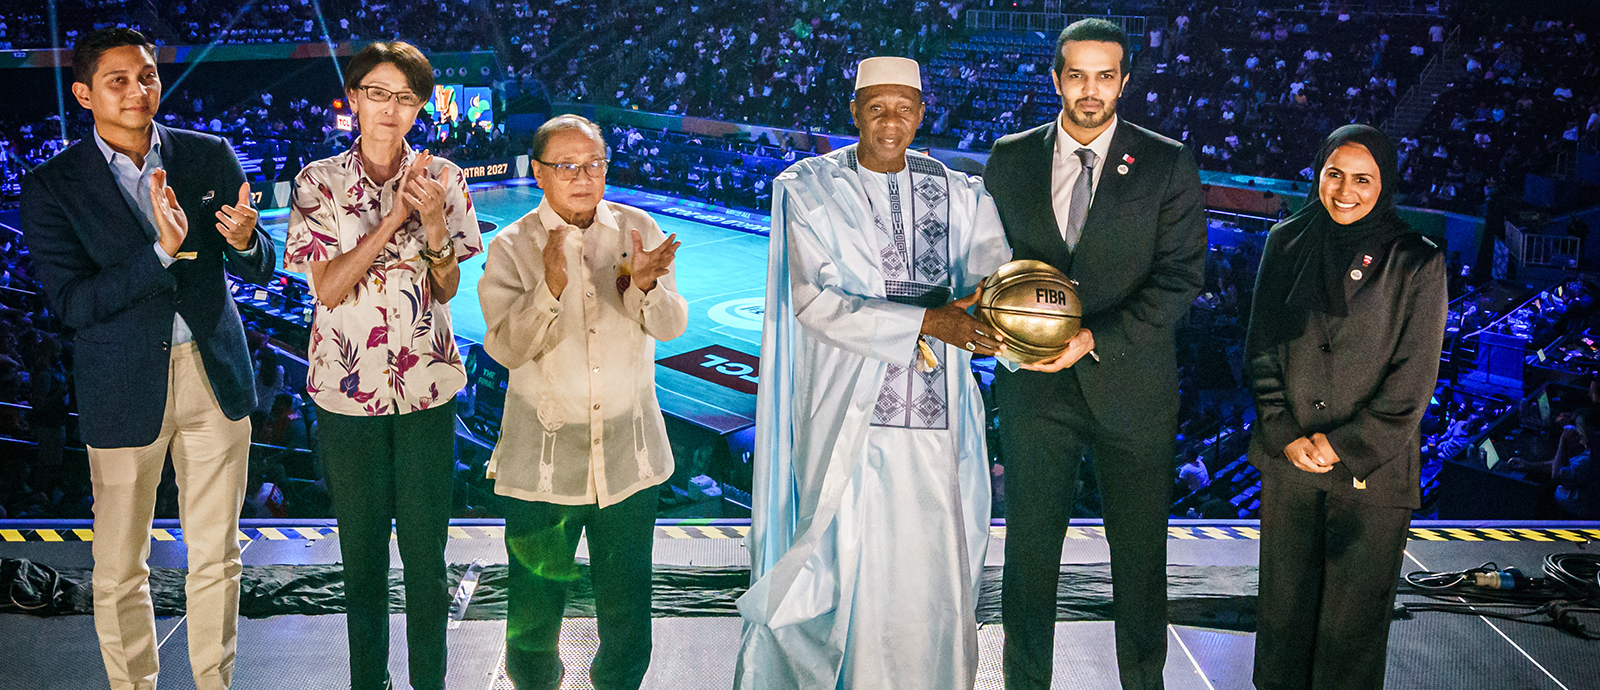 دولة قطر تتسلم رسمياً كرة كأس العالم لكرة السلة للدولة المستضيفة من الاتحاد الدولي